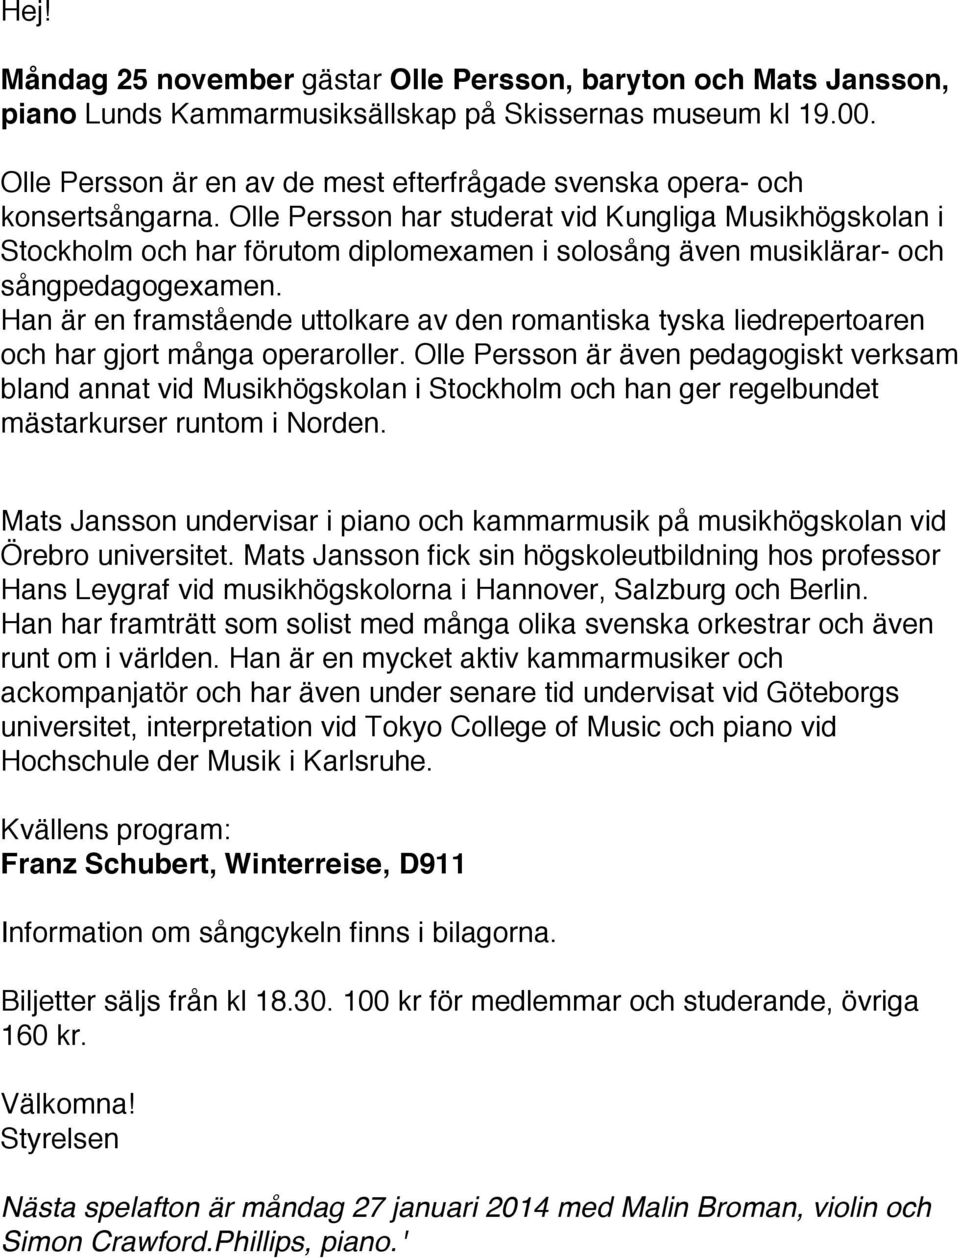 Olle Persson har studerat vid Kungliga Musikhögskolan i Stockholm och har förutom diplomexamen i solosång även musiklärar- och sångpedagogexamen.